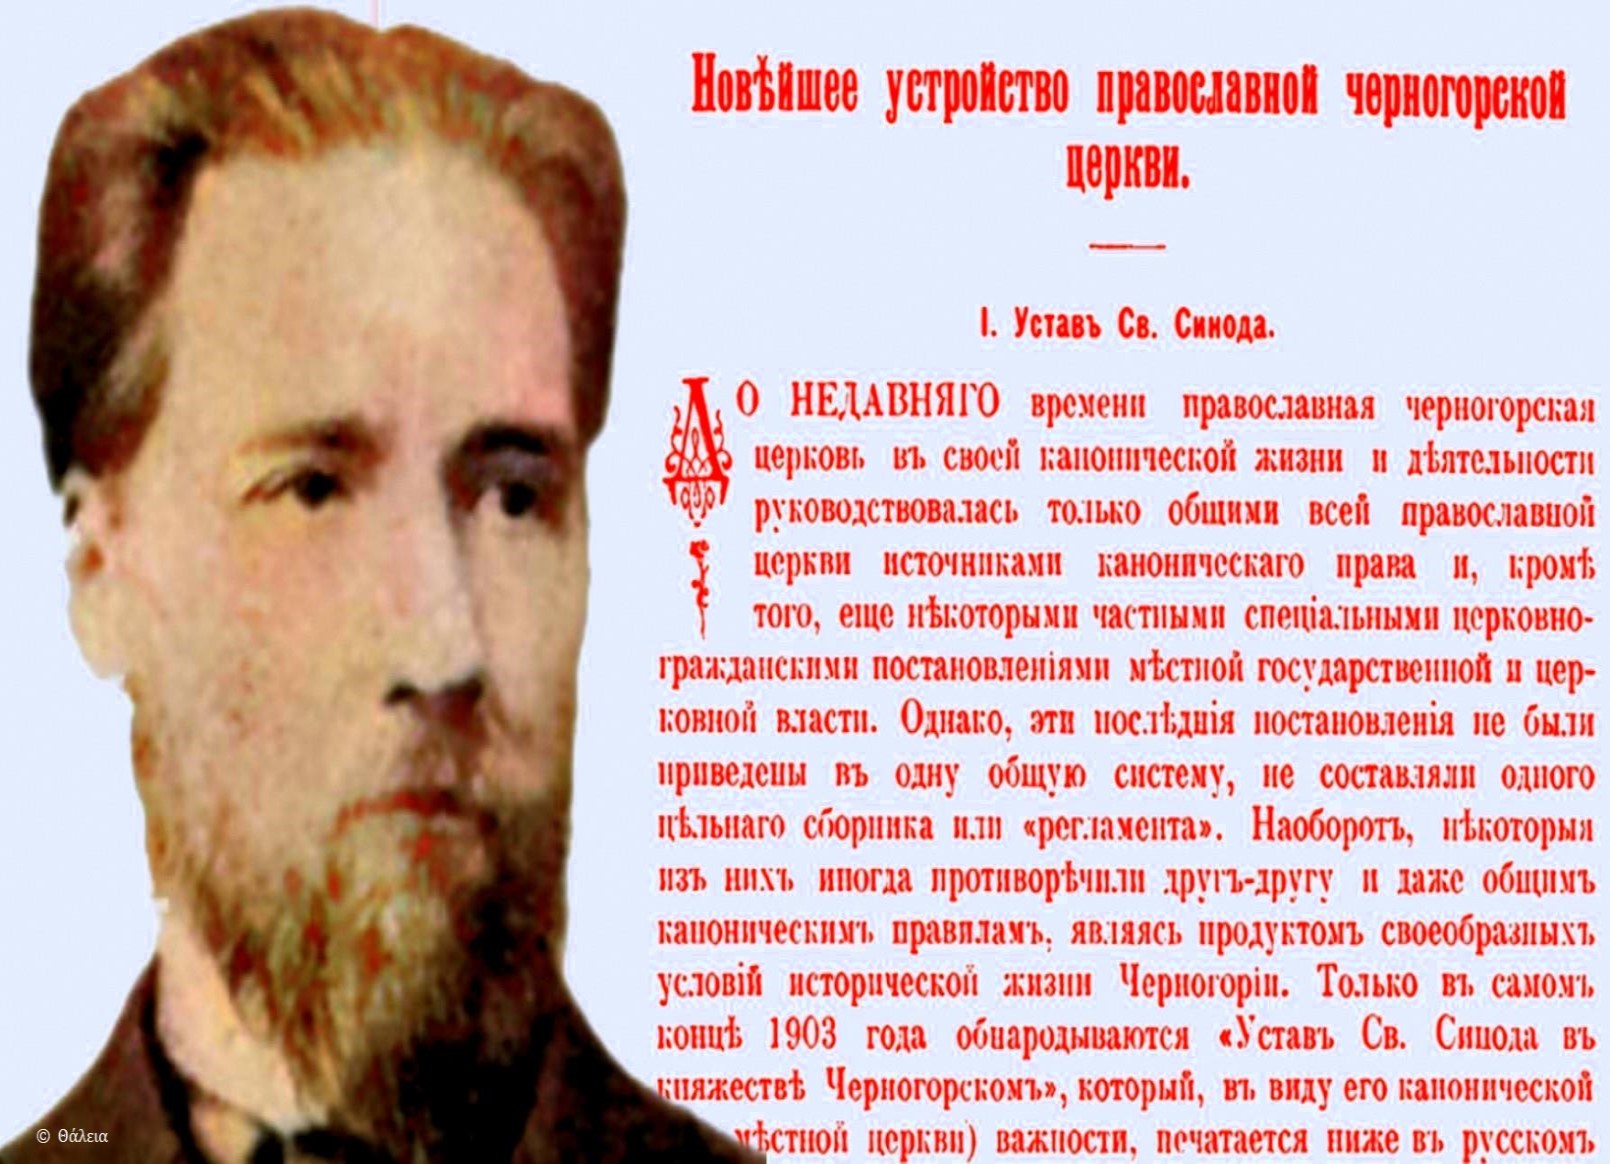 Crnogorska pravoslavna crkva, analiza ustrojstva prof. dr Ivana Paljmova (1905)